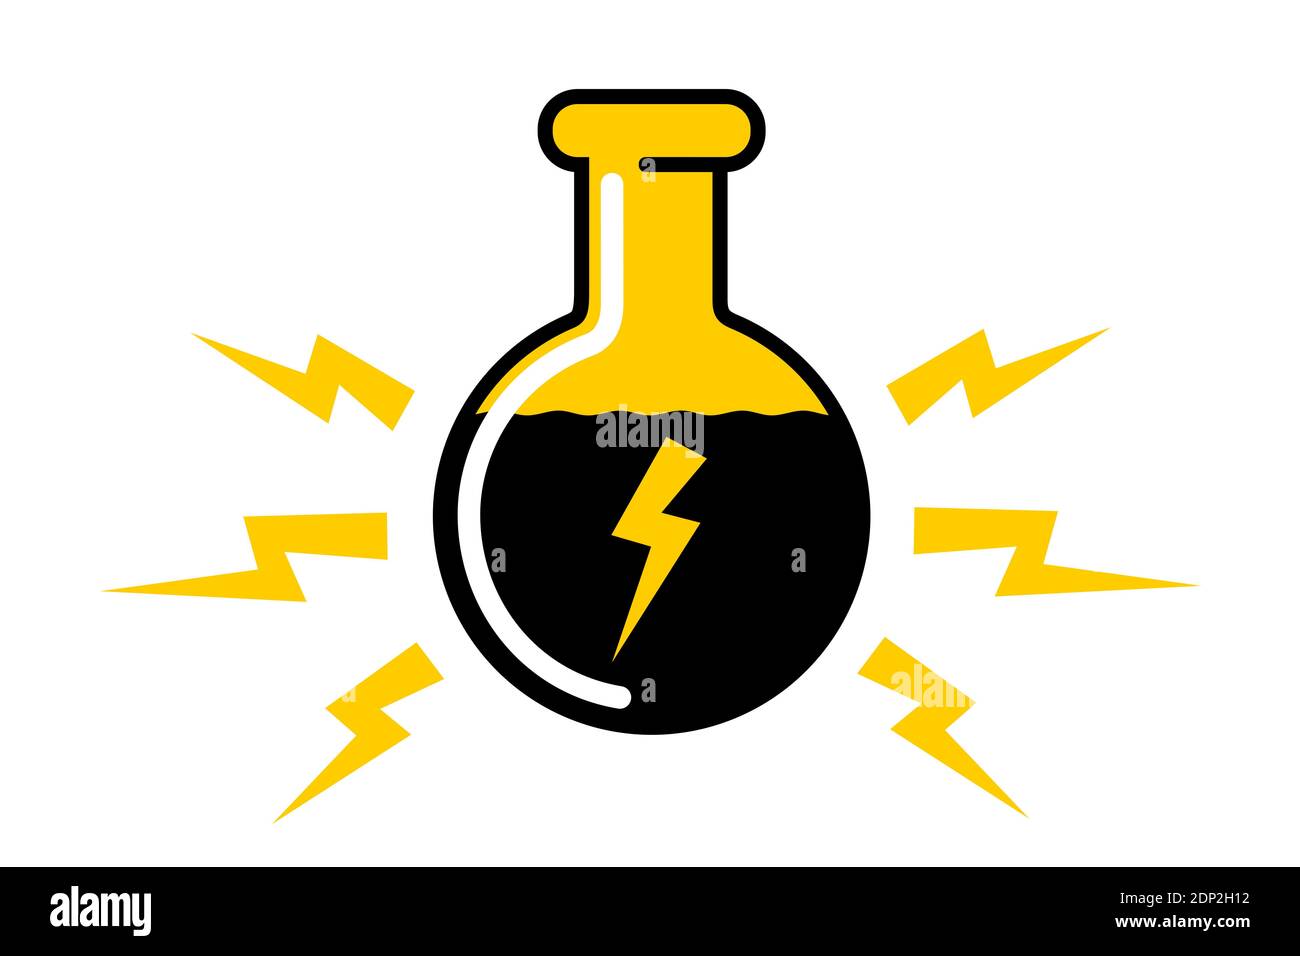 Energy drink - stimolante liquido stimolante con simbolo di elettricità - bere sta aumentando l'energia. Illustrazione vettoriale isolata in bianco. Foto Stock